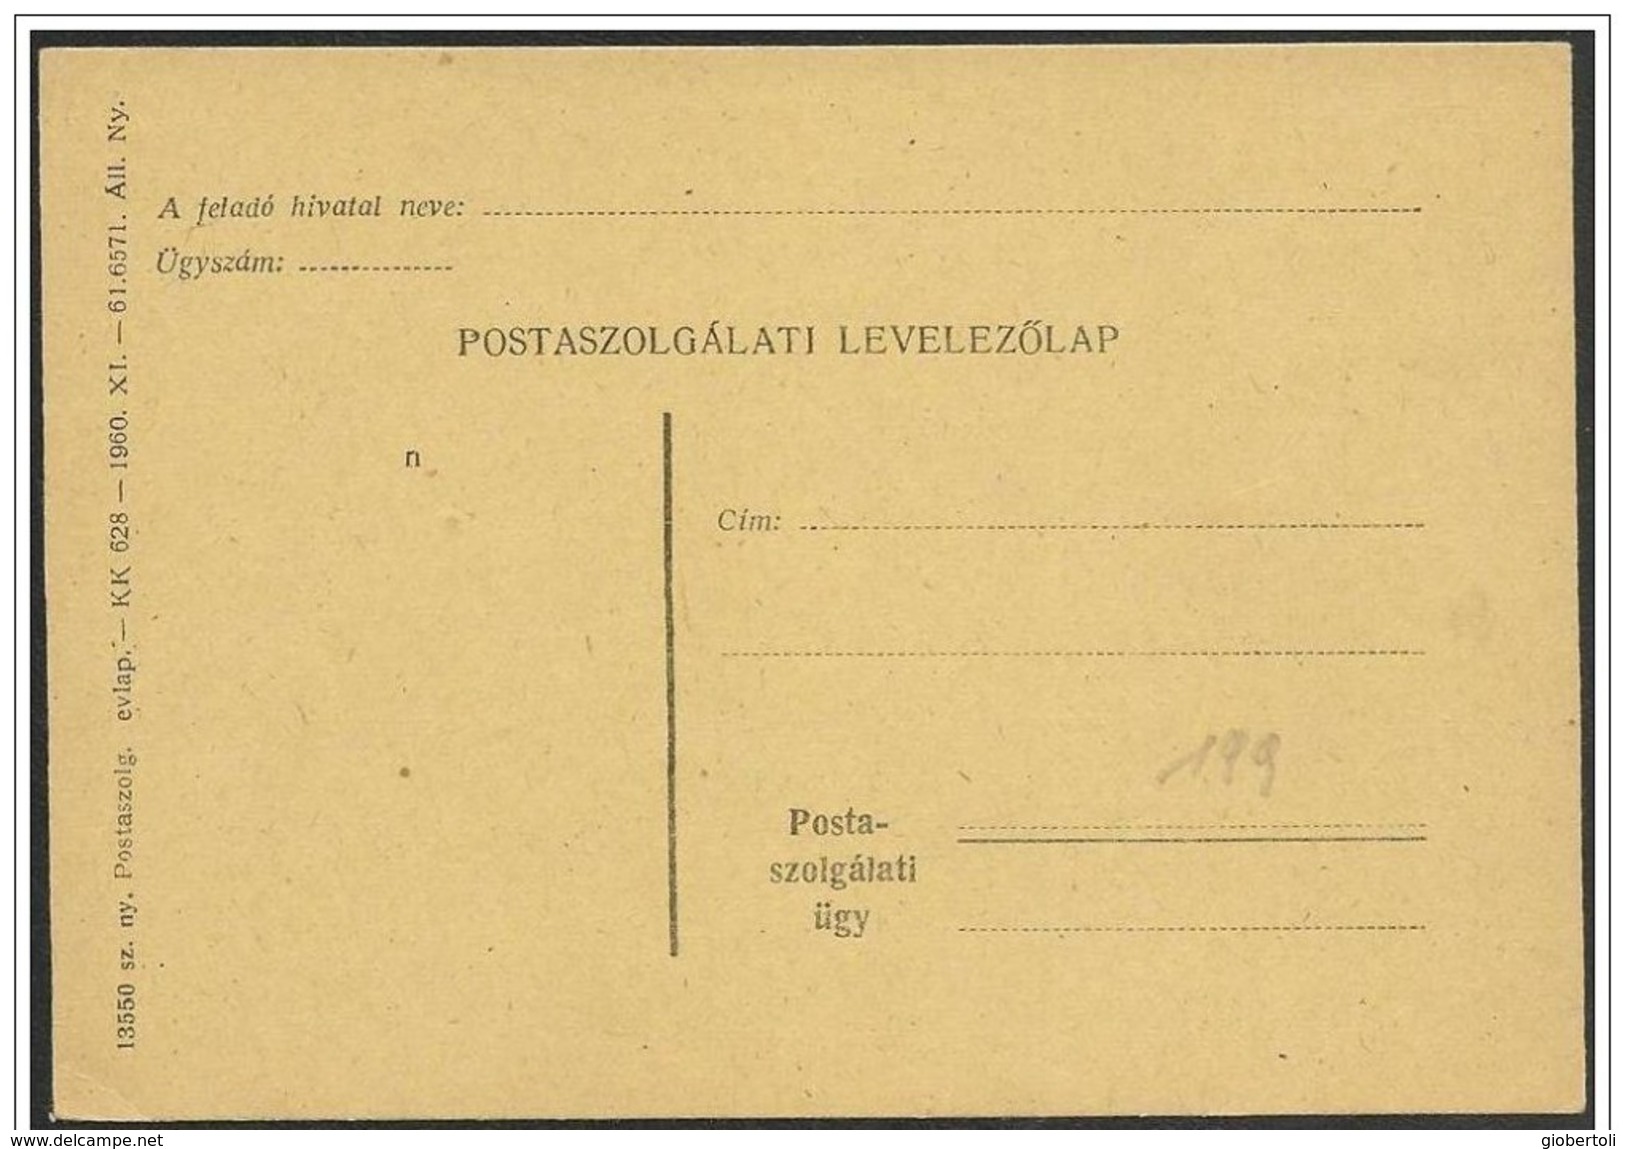 Ungheria/Hongrie/Hungary: Franchigia Postale, Free Use Of Postal, Utilisation Gratuite Des Services Postaux - Franchise